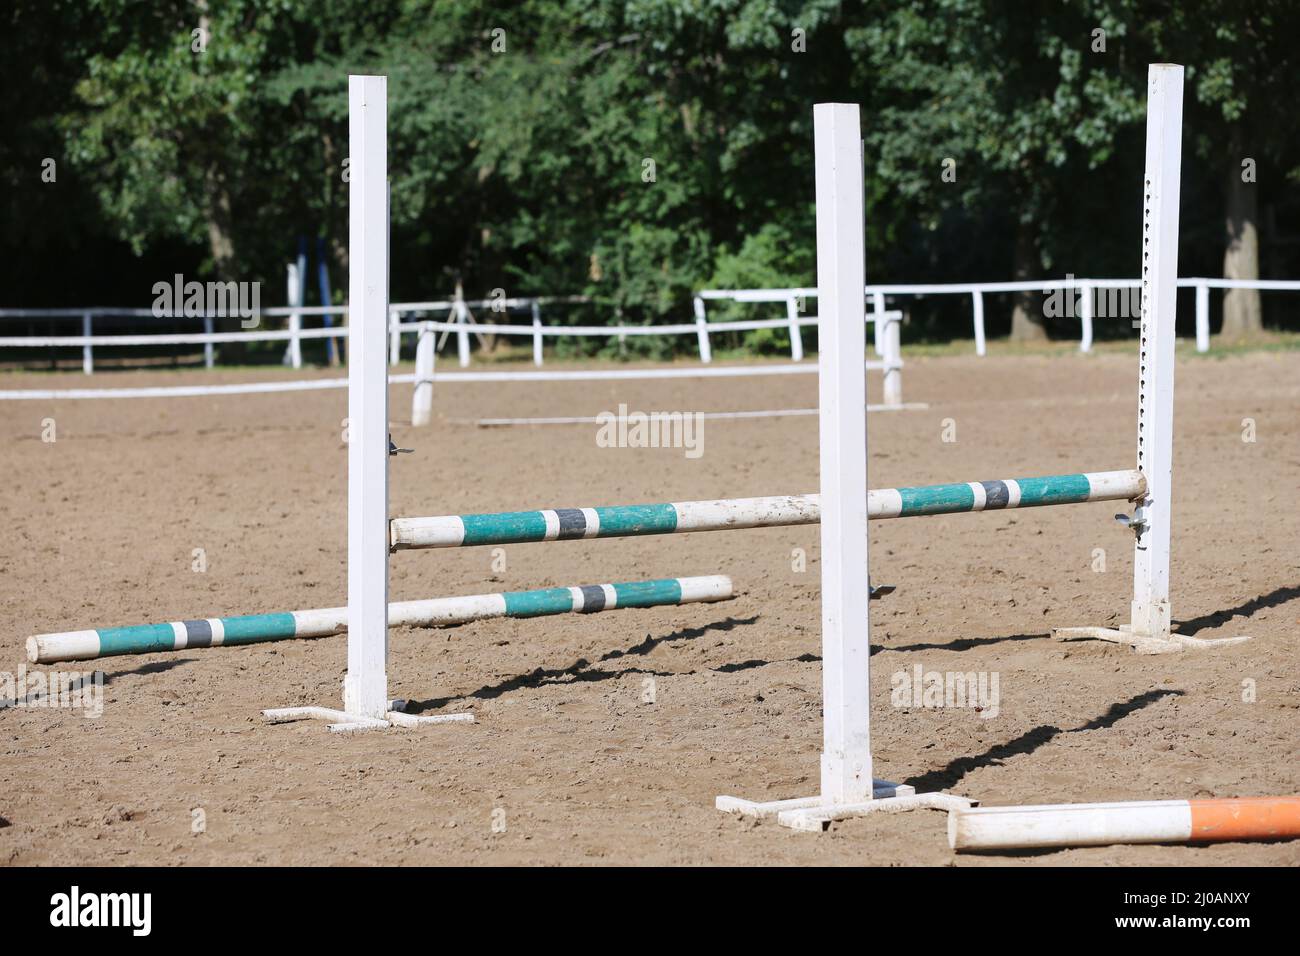 Fotos de Barras de obstáculos para el evento de salto de caballo